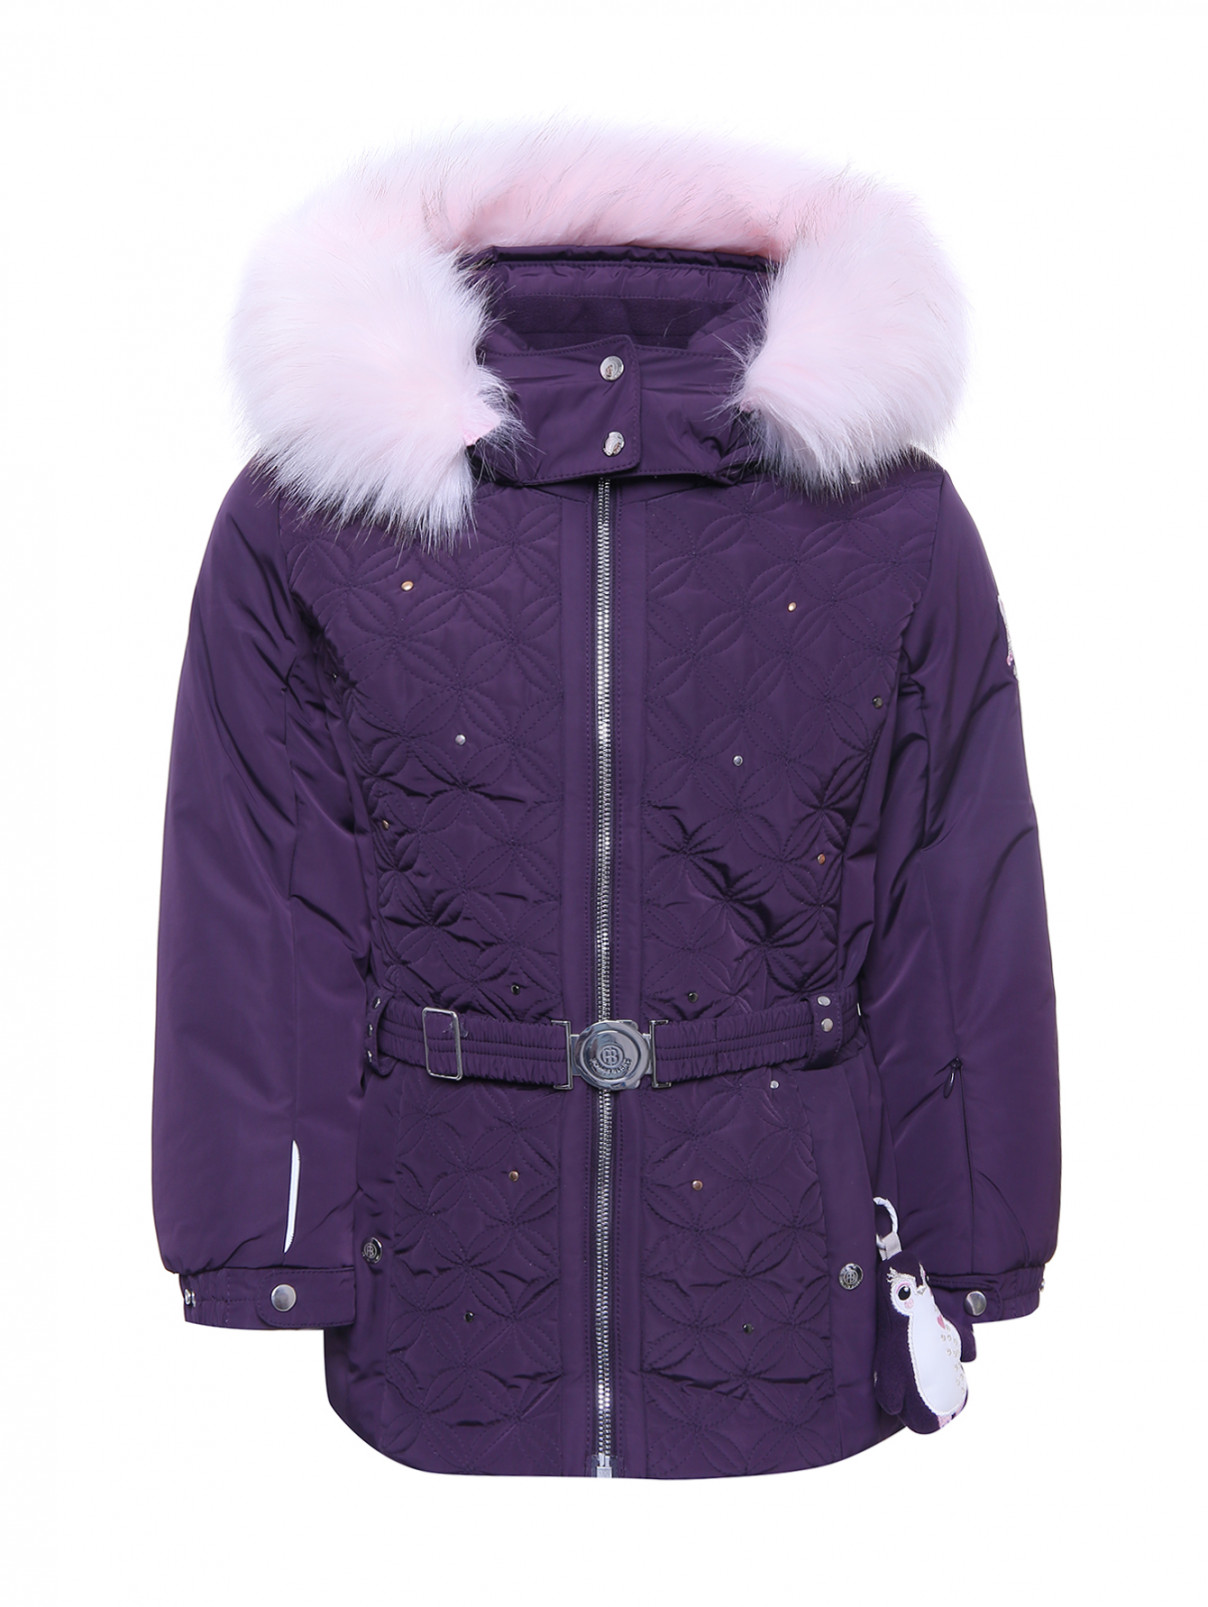 Горнолыжная куртка с металлическим декором Poivre Blanc  –  Общий вид  – Цвет:  Фиолетовый